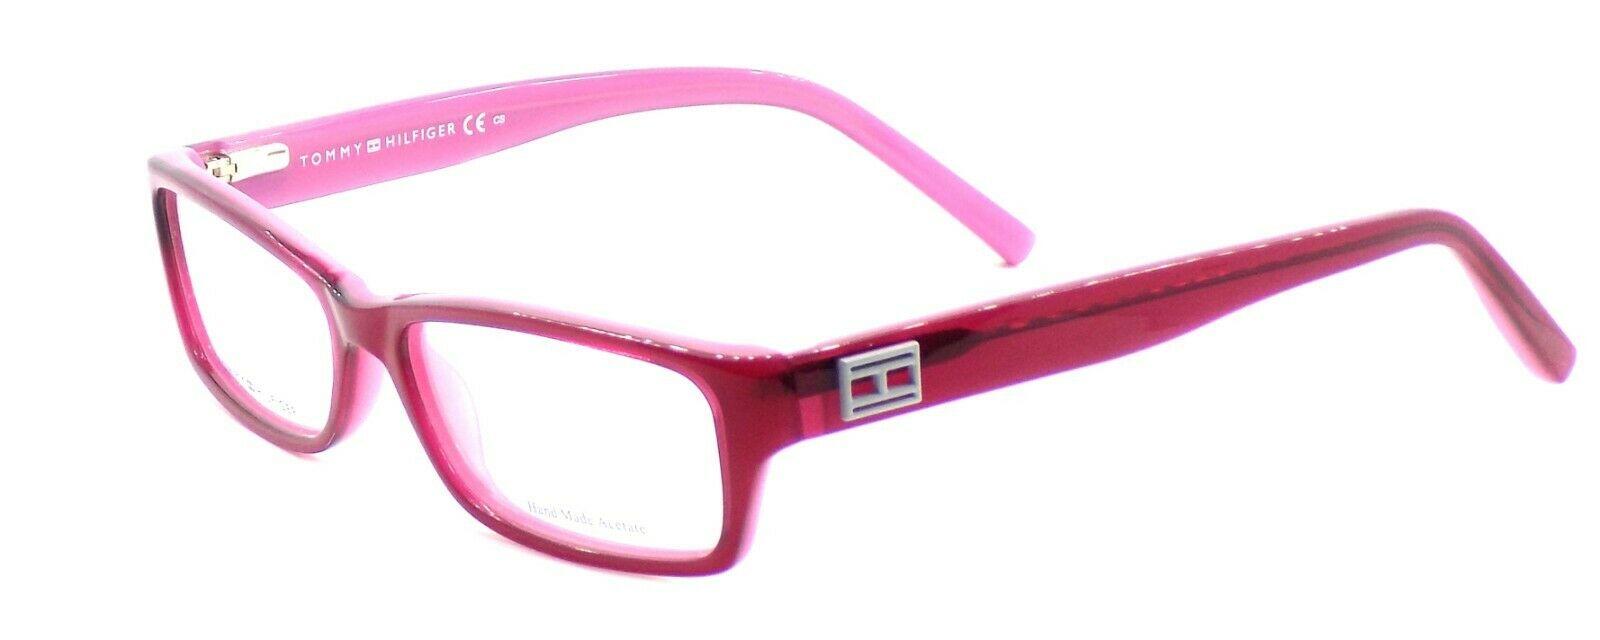 1-TOMMY HILFIGER TH 1046 0T5 Women's Eyeglasses Frames 53-15-140 Burgundy / Pink-827886927715-IKSpecs